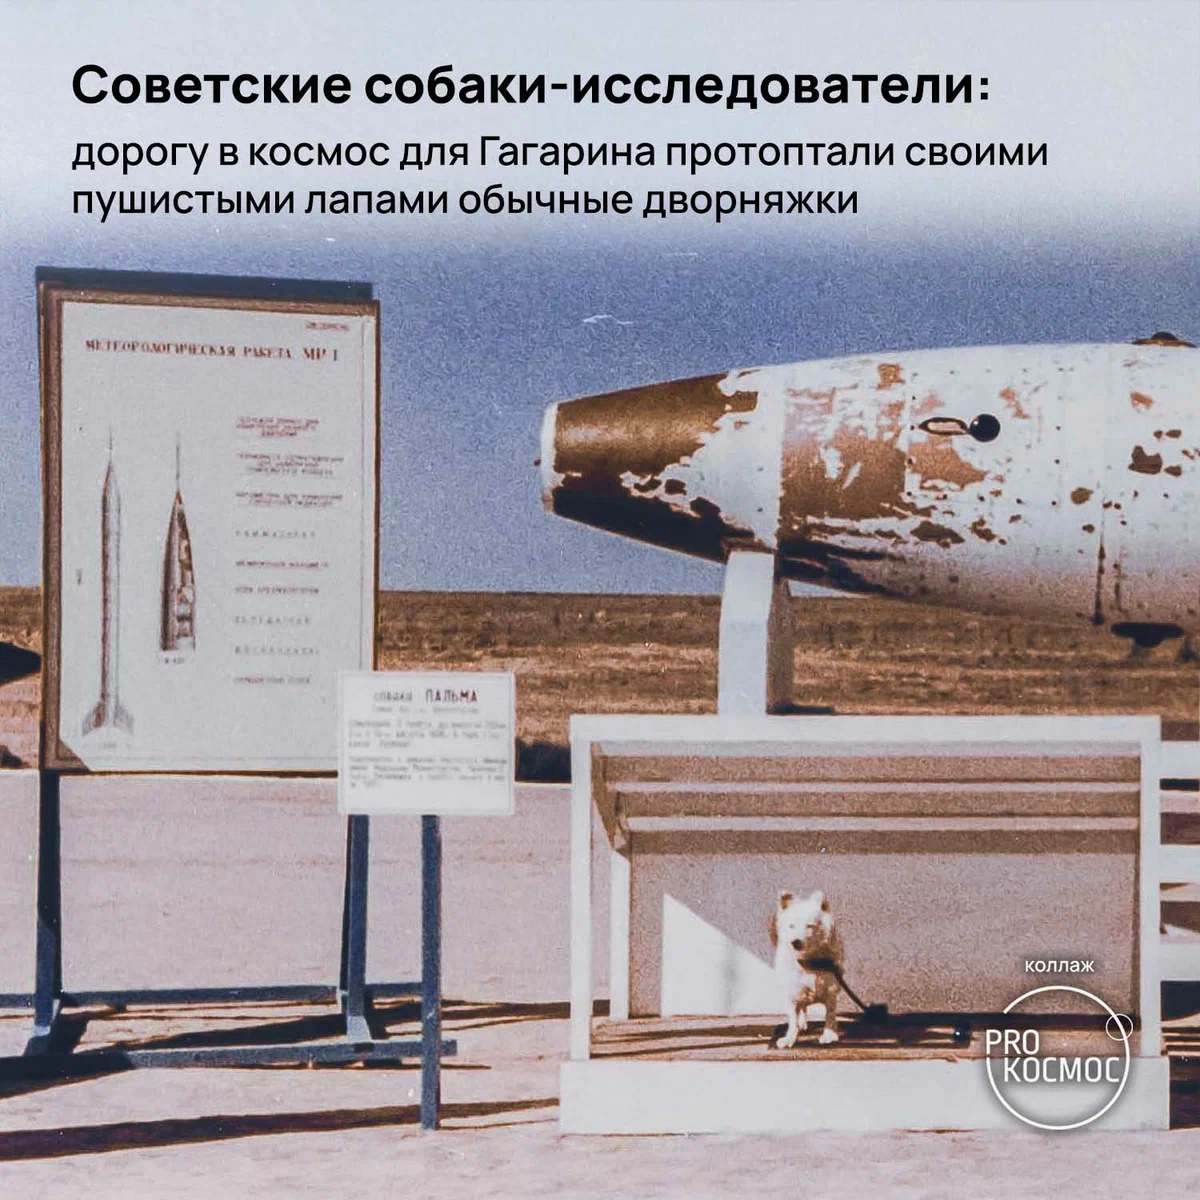 Советские собаки-исследователи: дорогу в космос для Гагарина протоптали своими пушистыми лапами обычные дворняжки height=1200px width=1200px